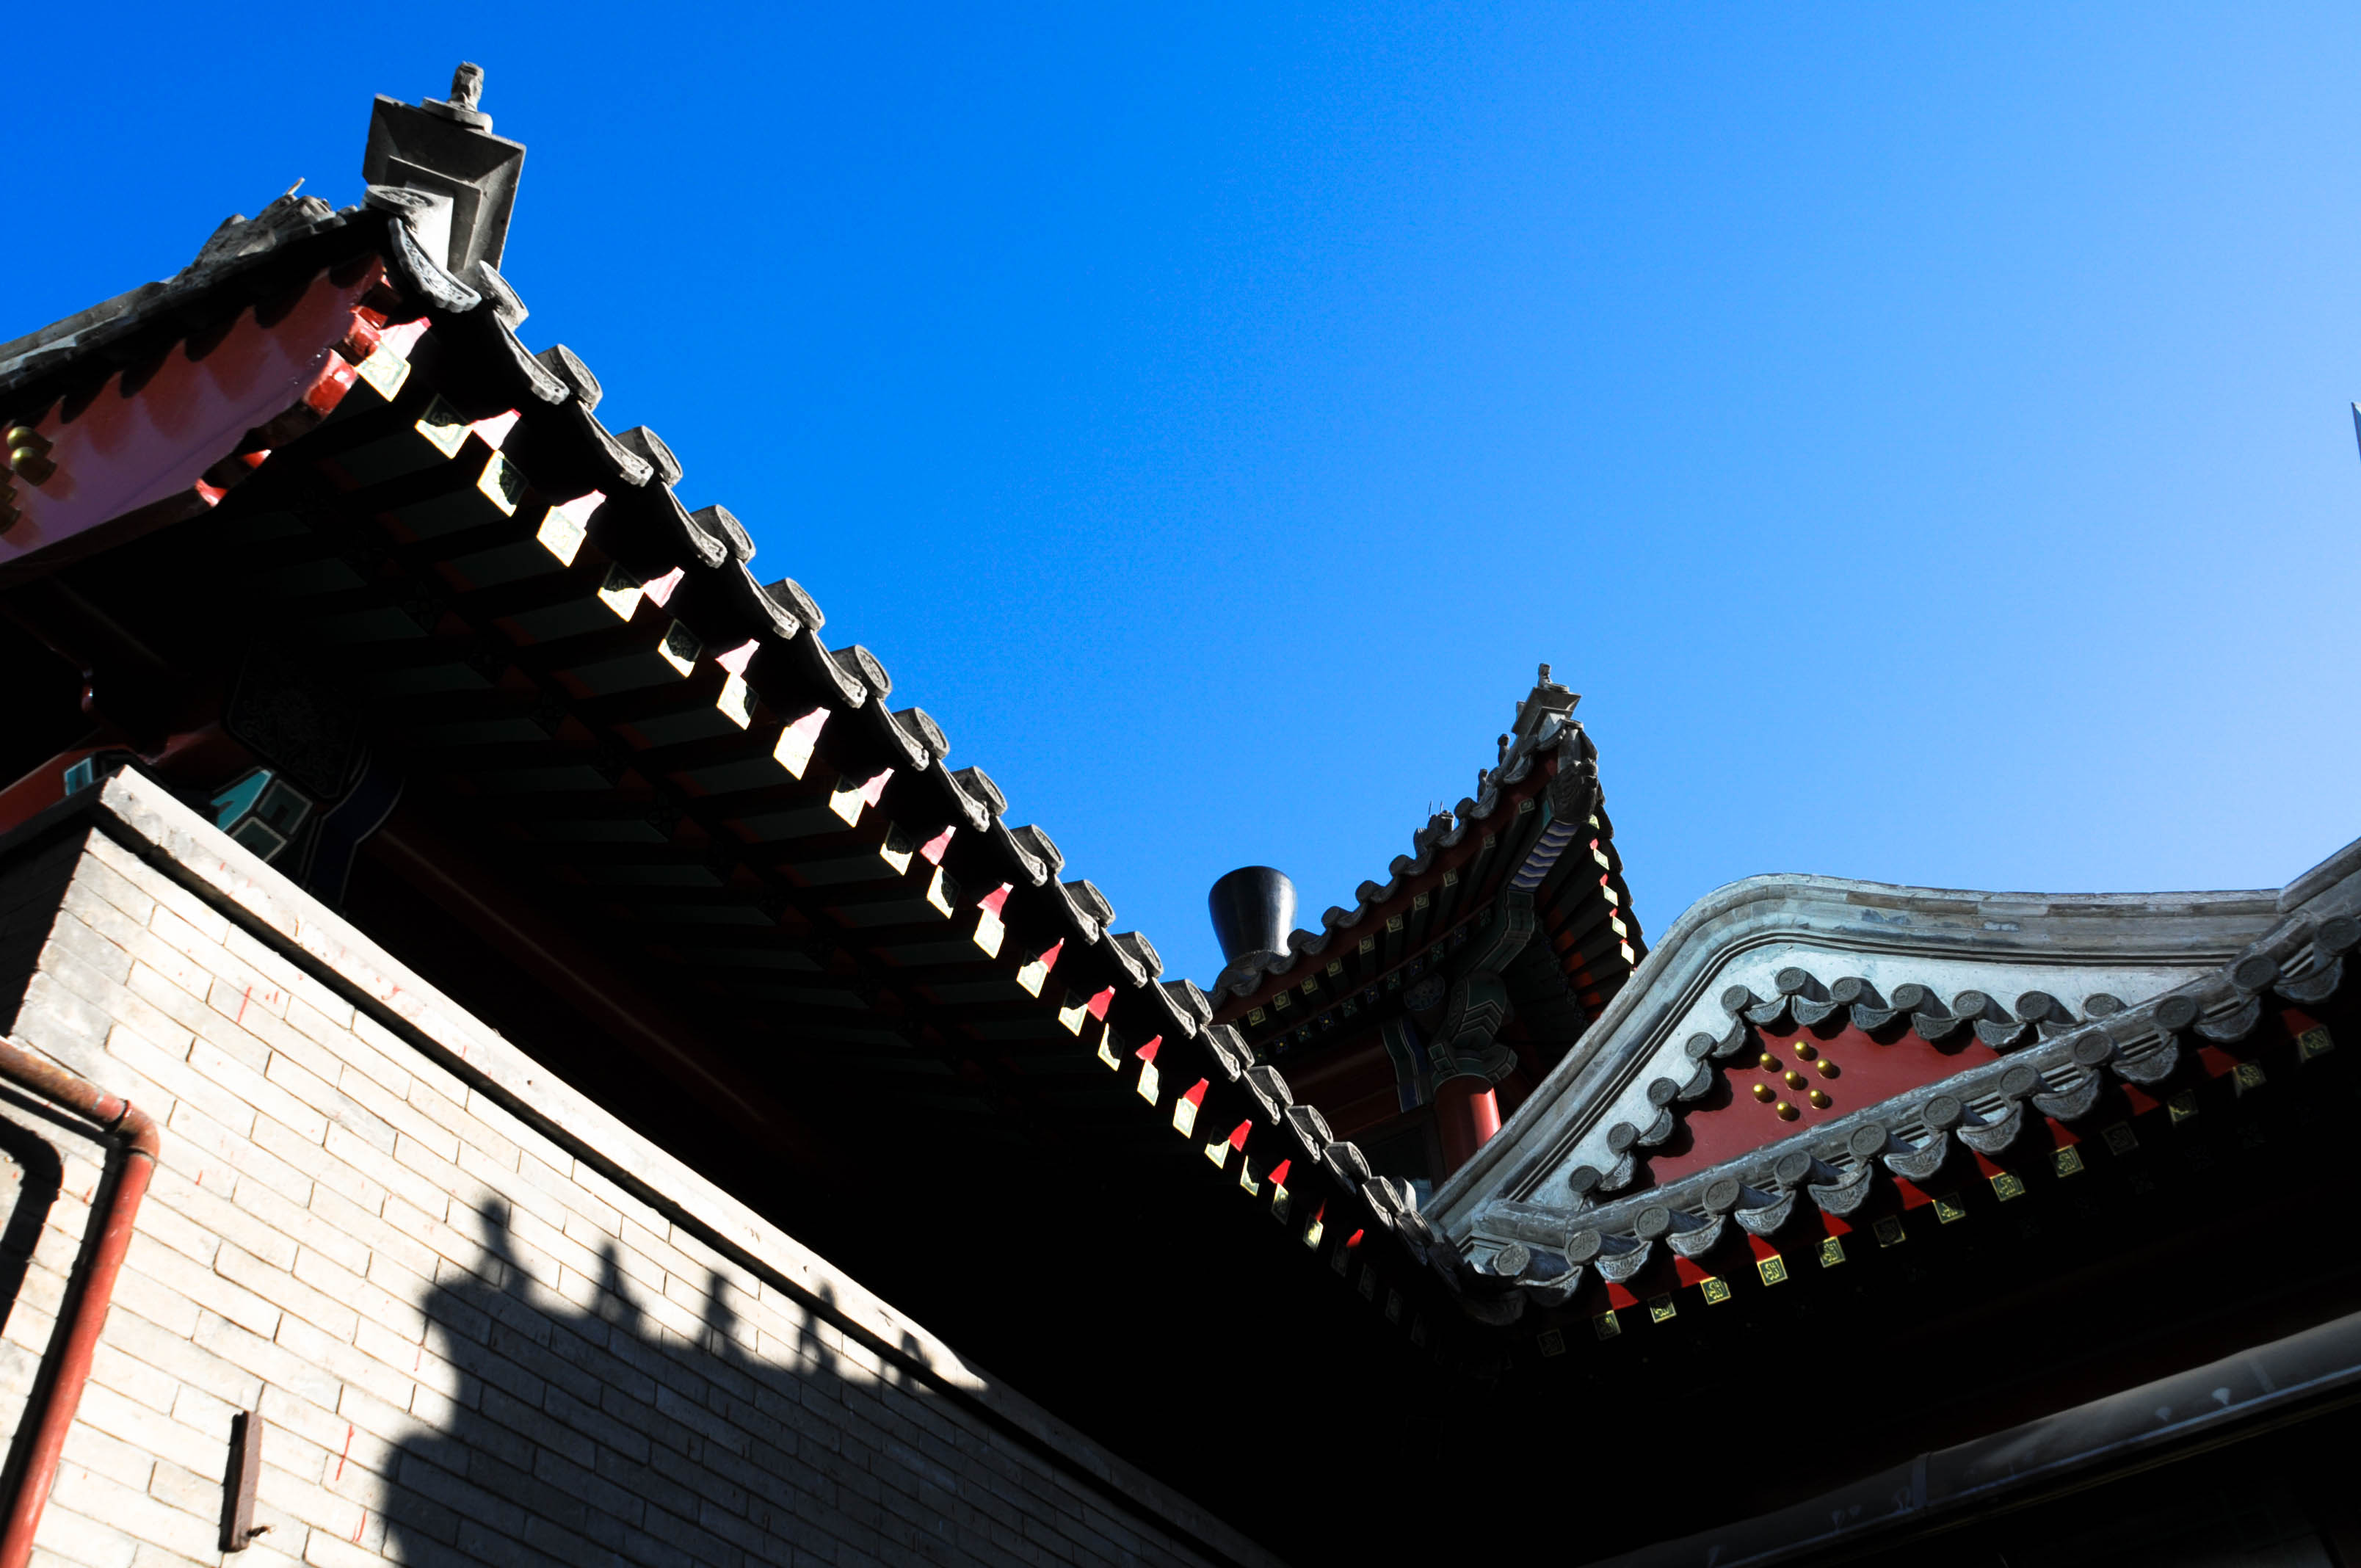 马甸清真寺位于北京市海淀区马甸南村7号(马甸桥西北侧) 。